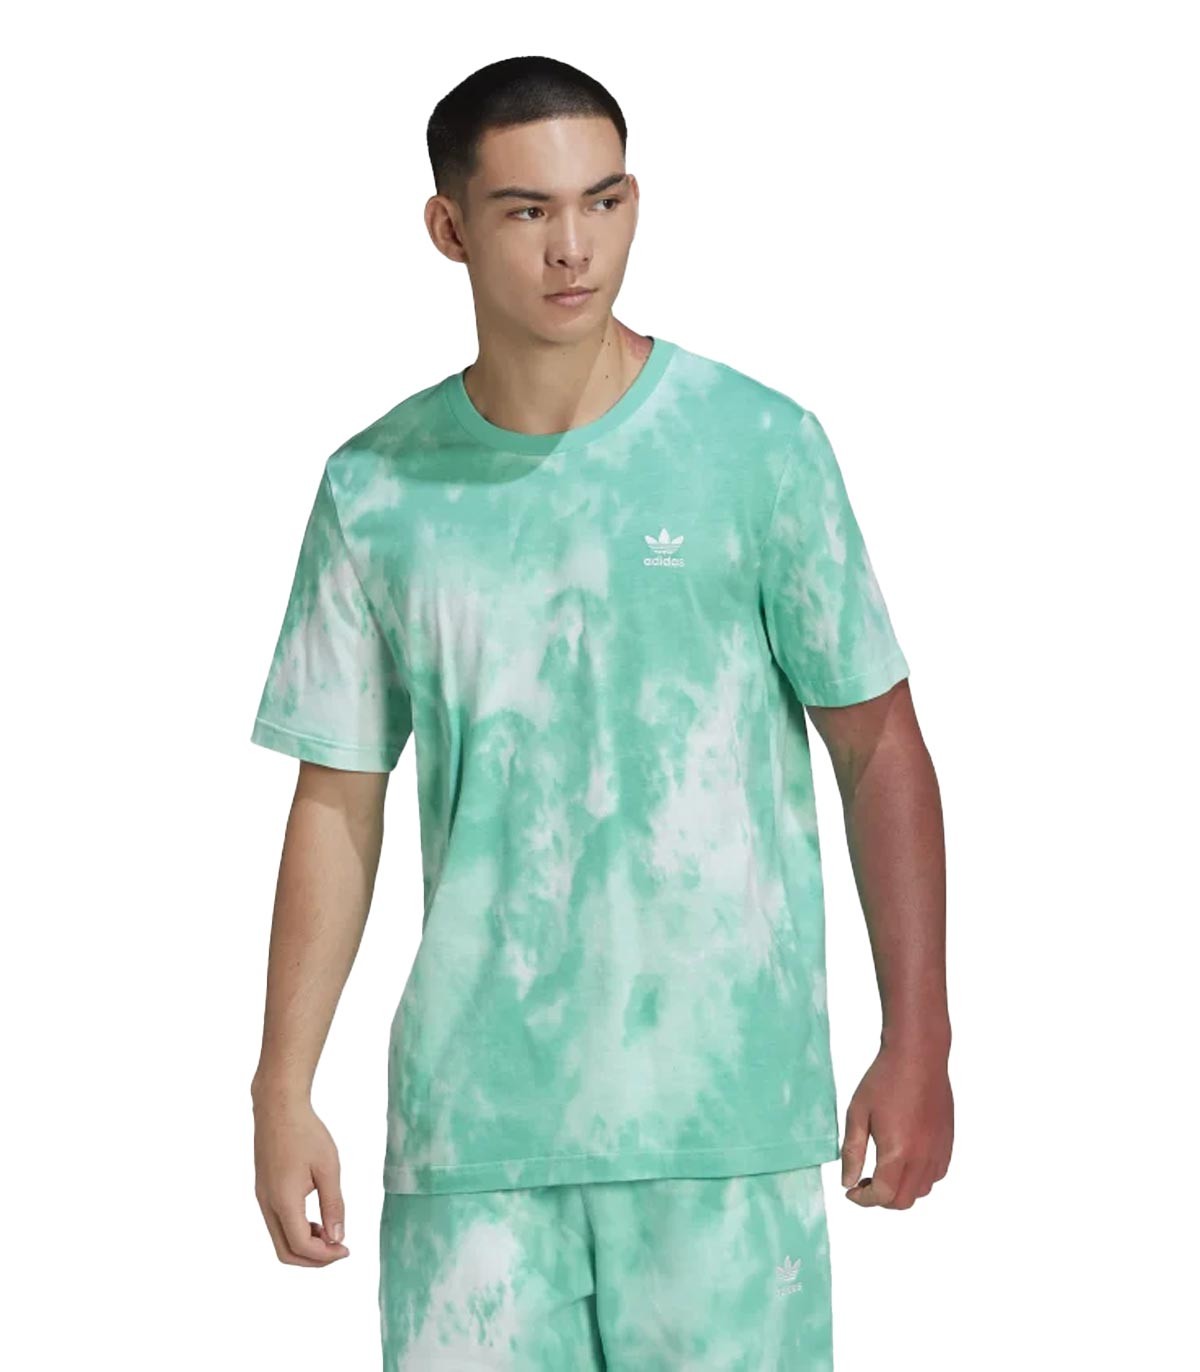 Adidas - Camiseta Adicolor Essentials Trefoil Tie-Dyed - Verde